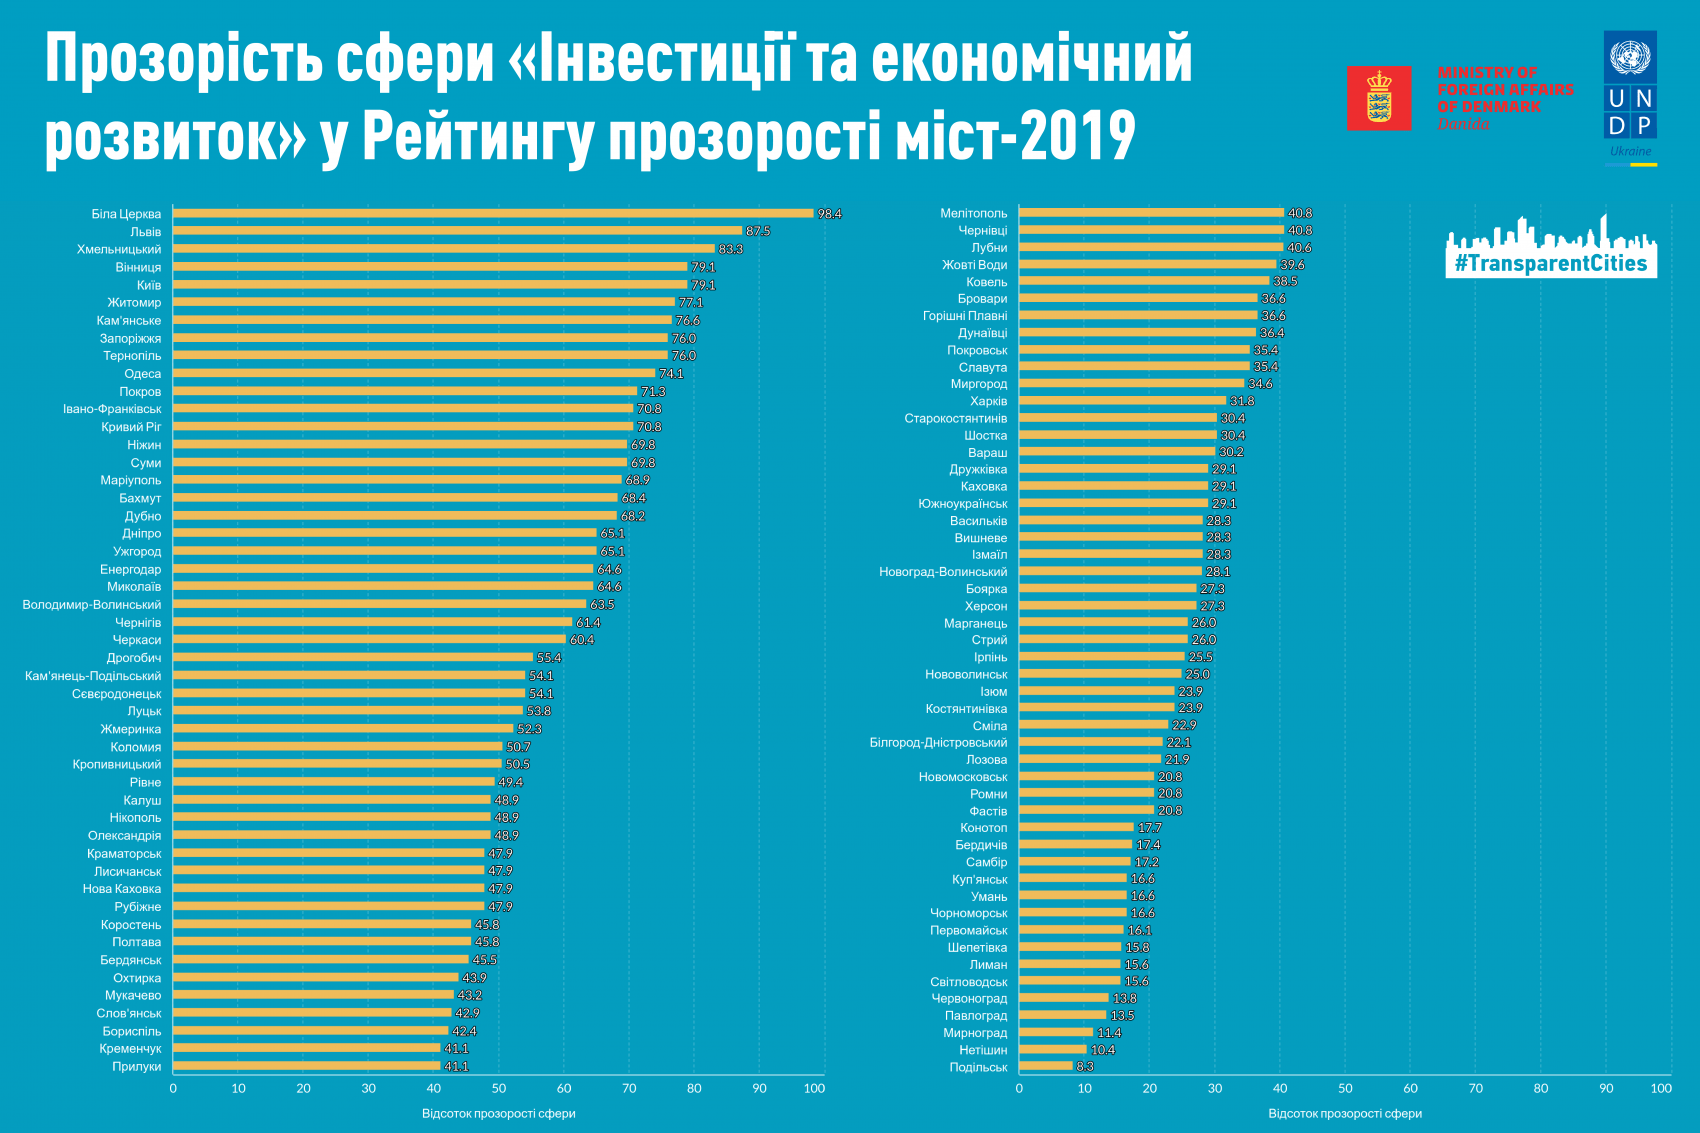 Біла Церква, Львів та Хмельницький стали лідерами з прозорості у сфері інвестицій та економічного розвитку серед 100 найбільших міст України у 2019 році